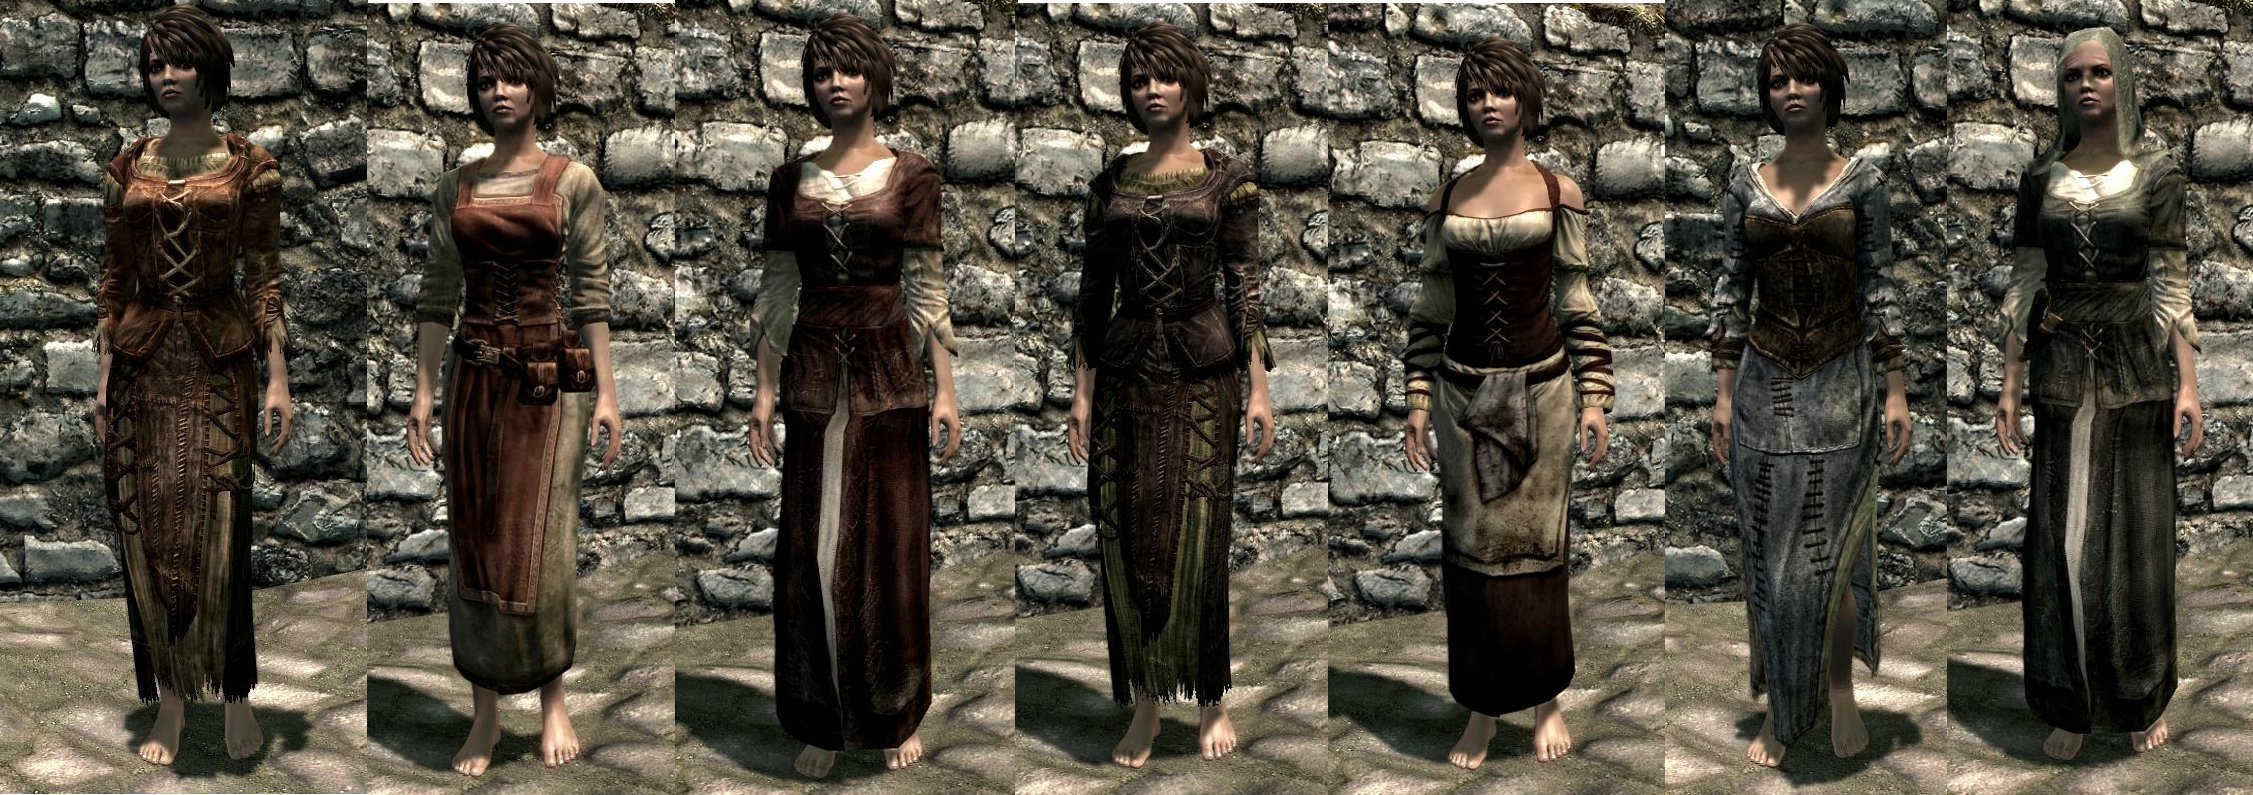 skyrim female armor no mods